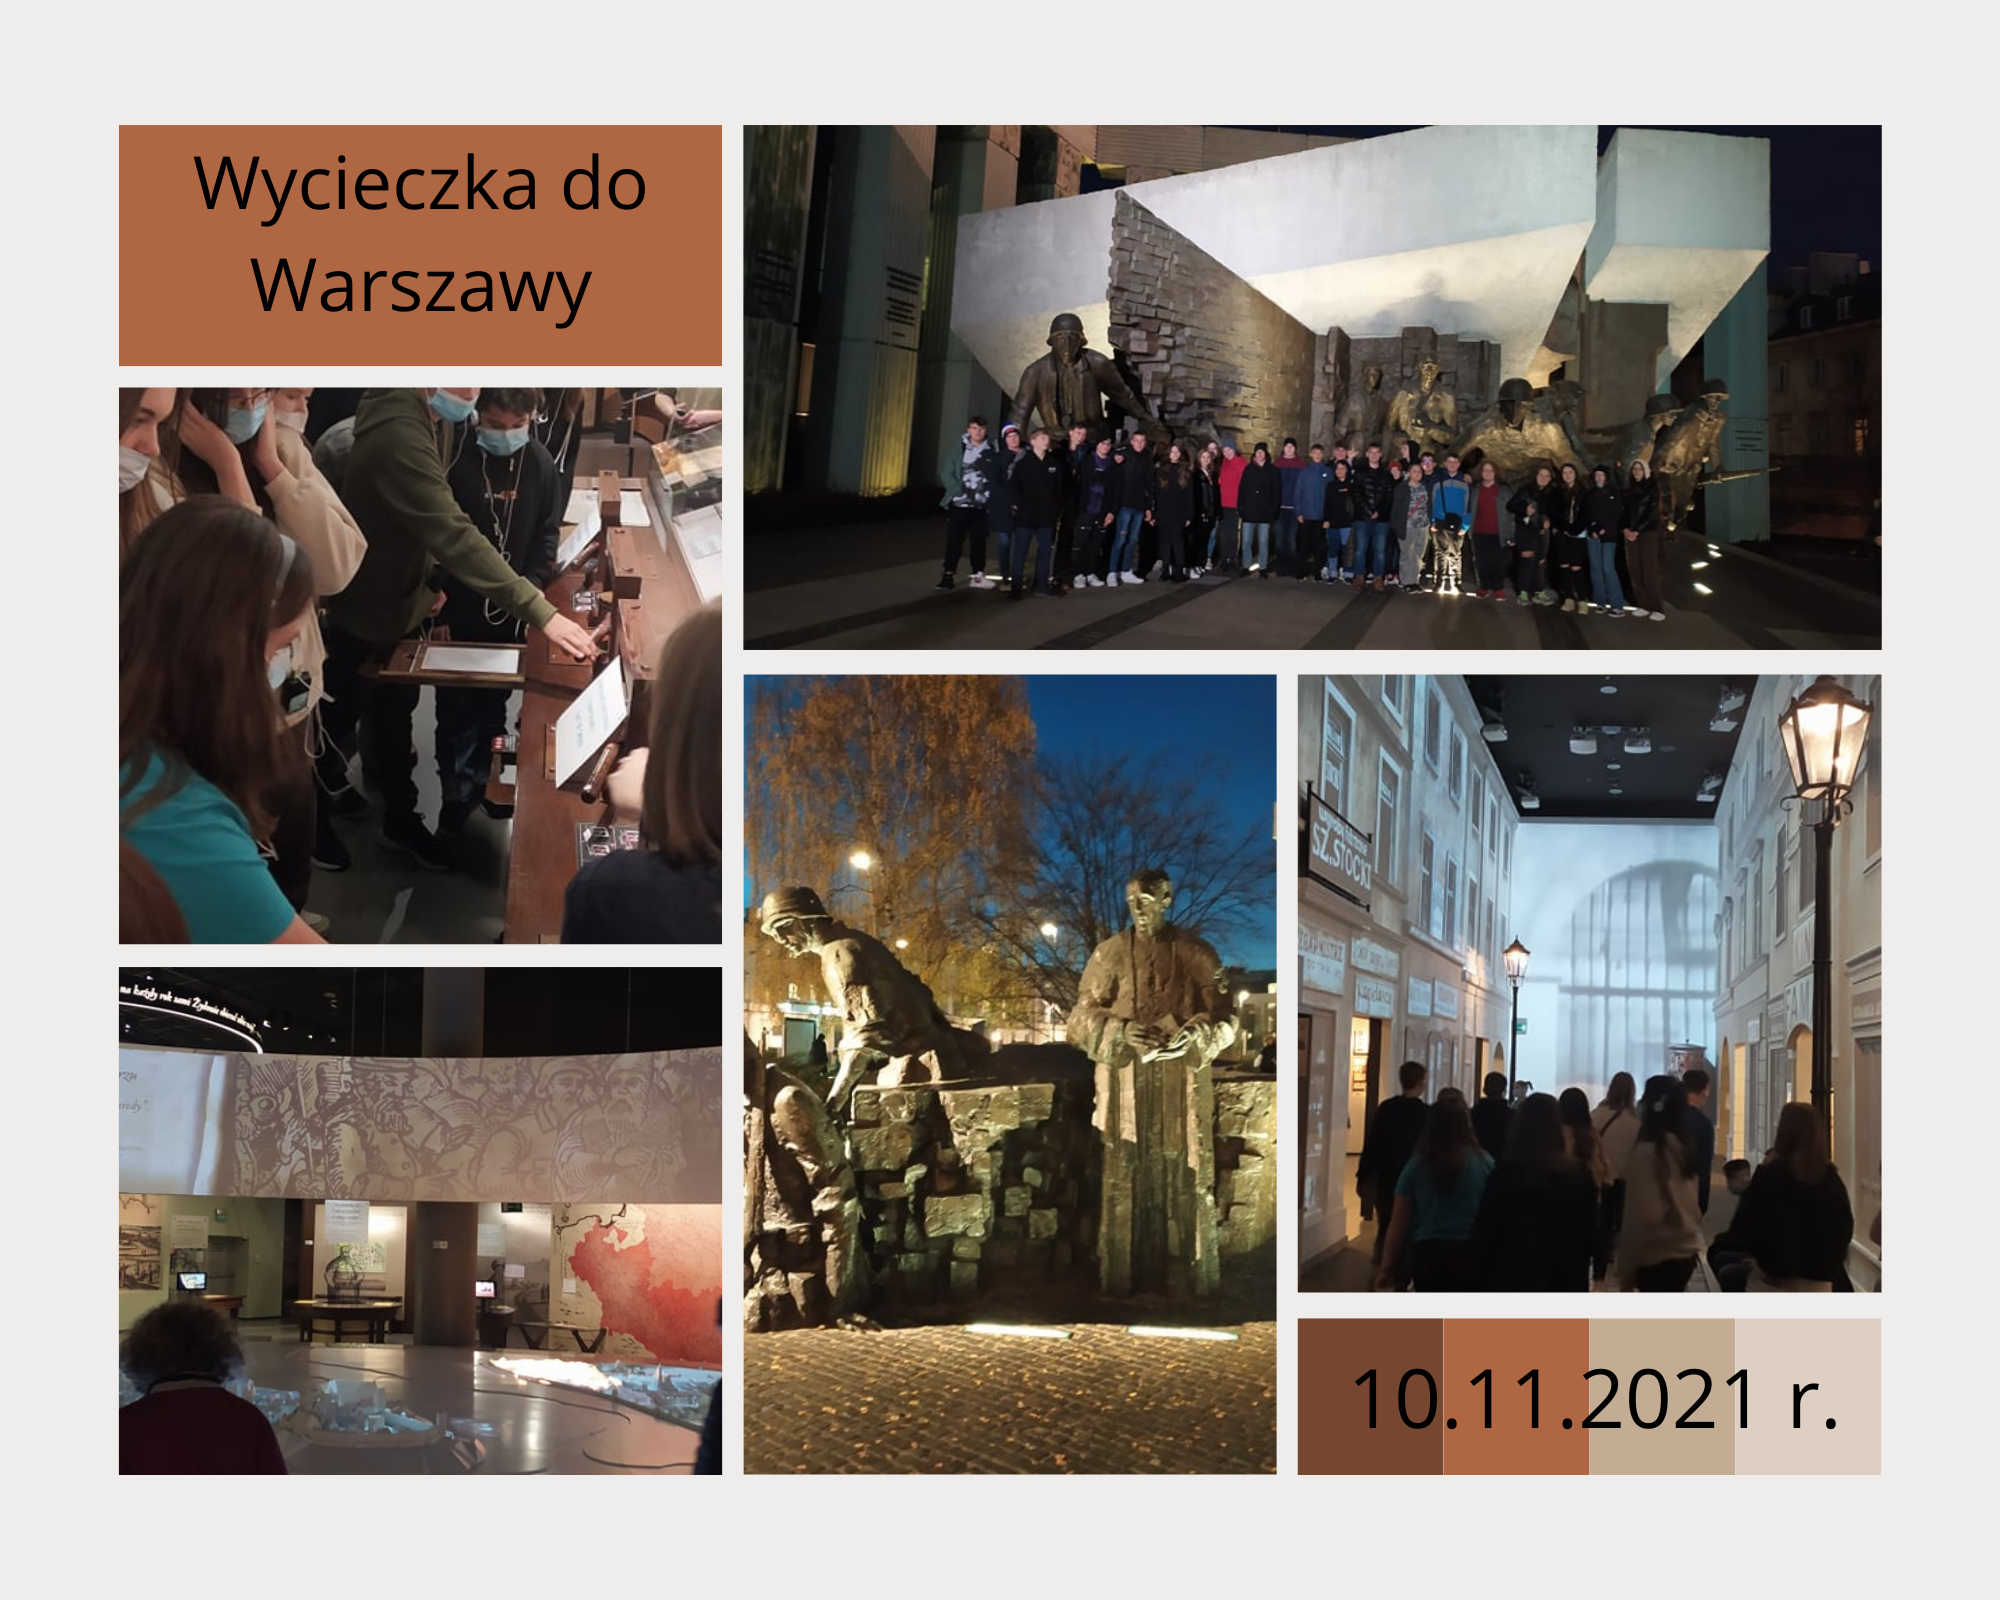 https://m.powiatszczycienski.pl/2021/11/orig/wycieczka-do-warszawy-1-45383.png